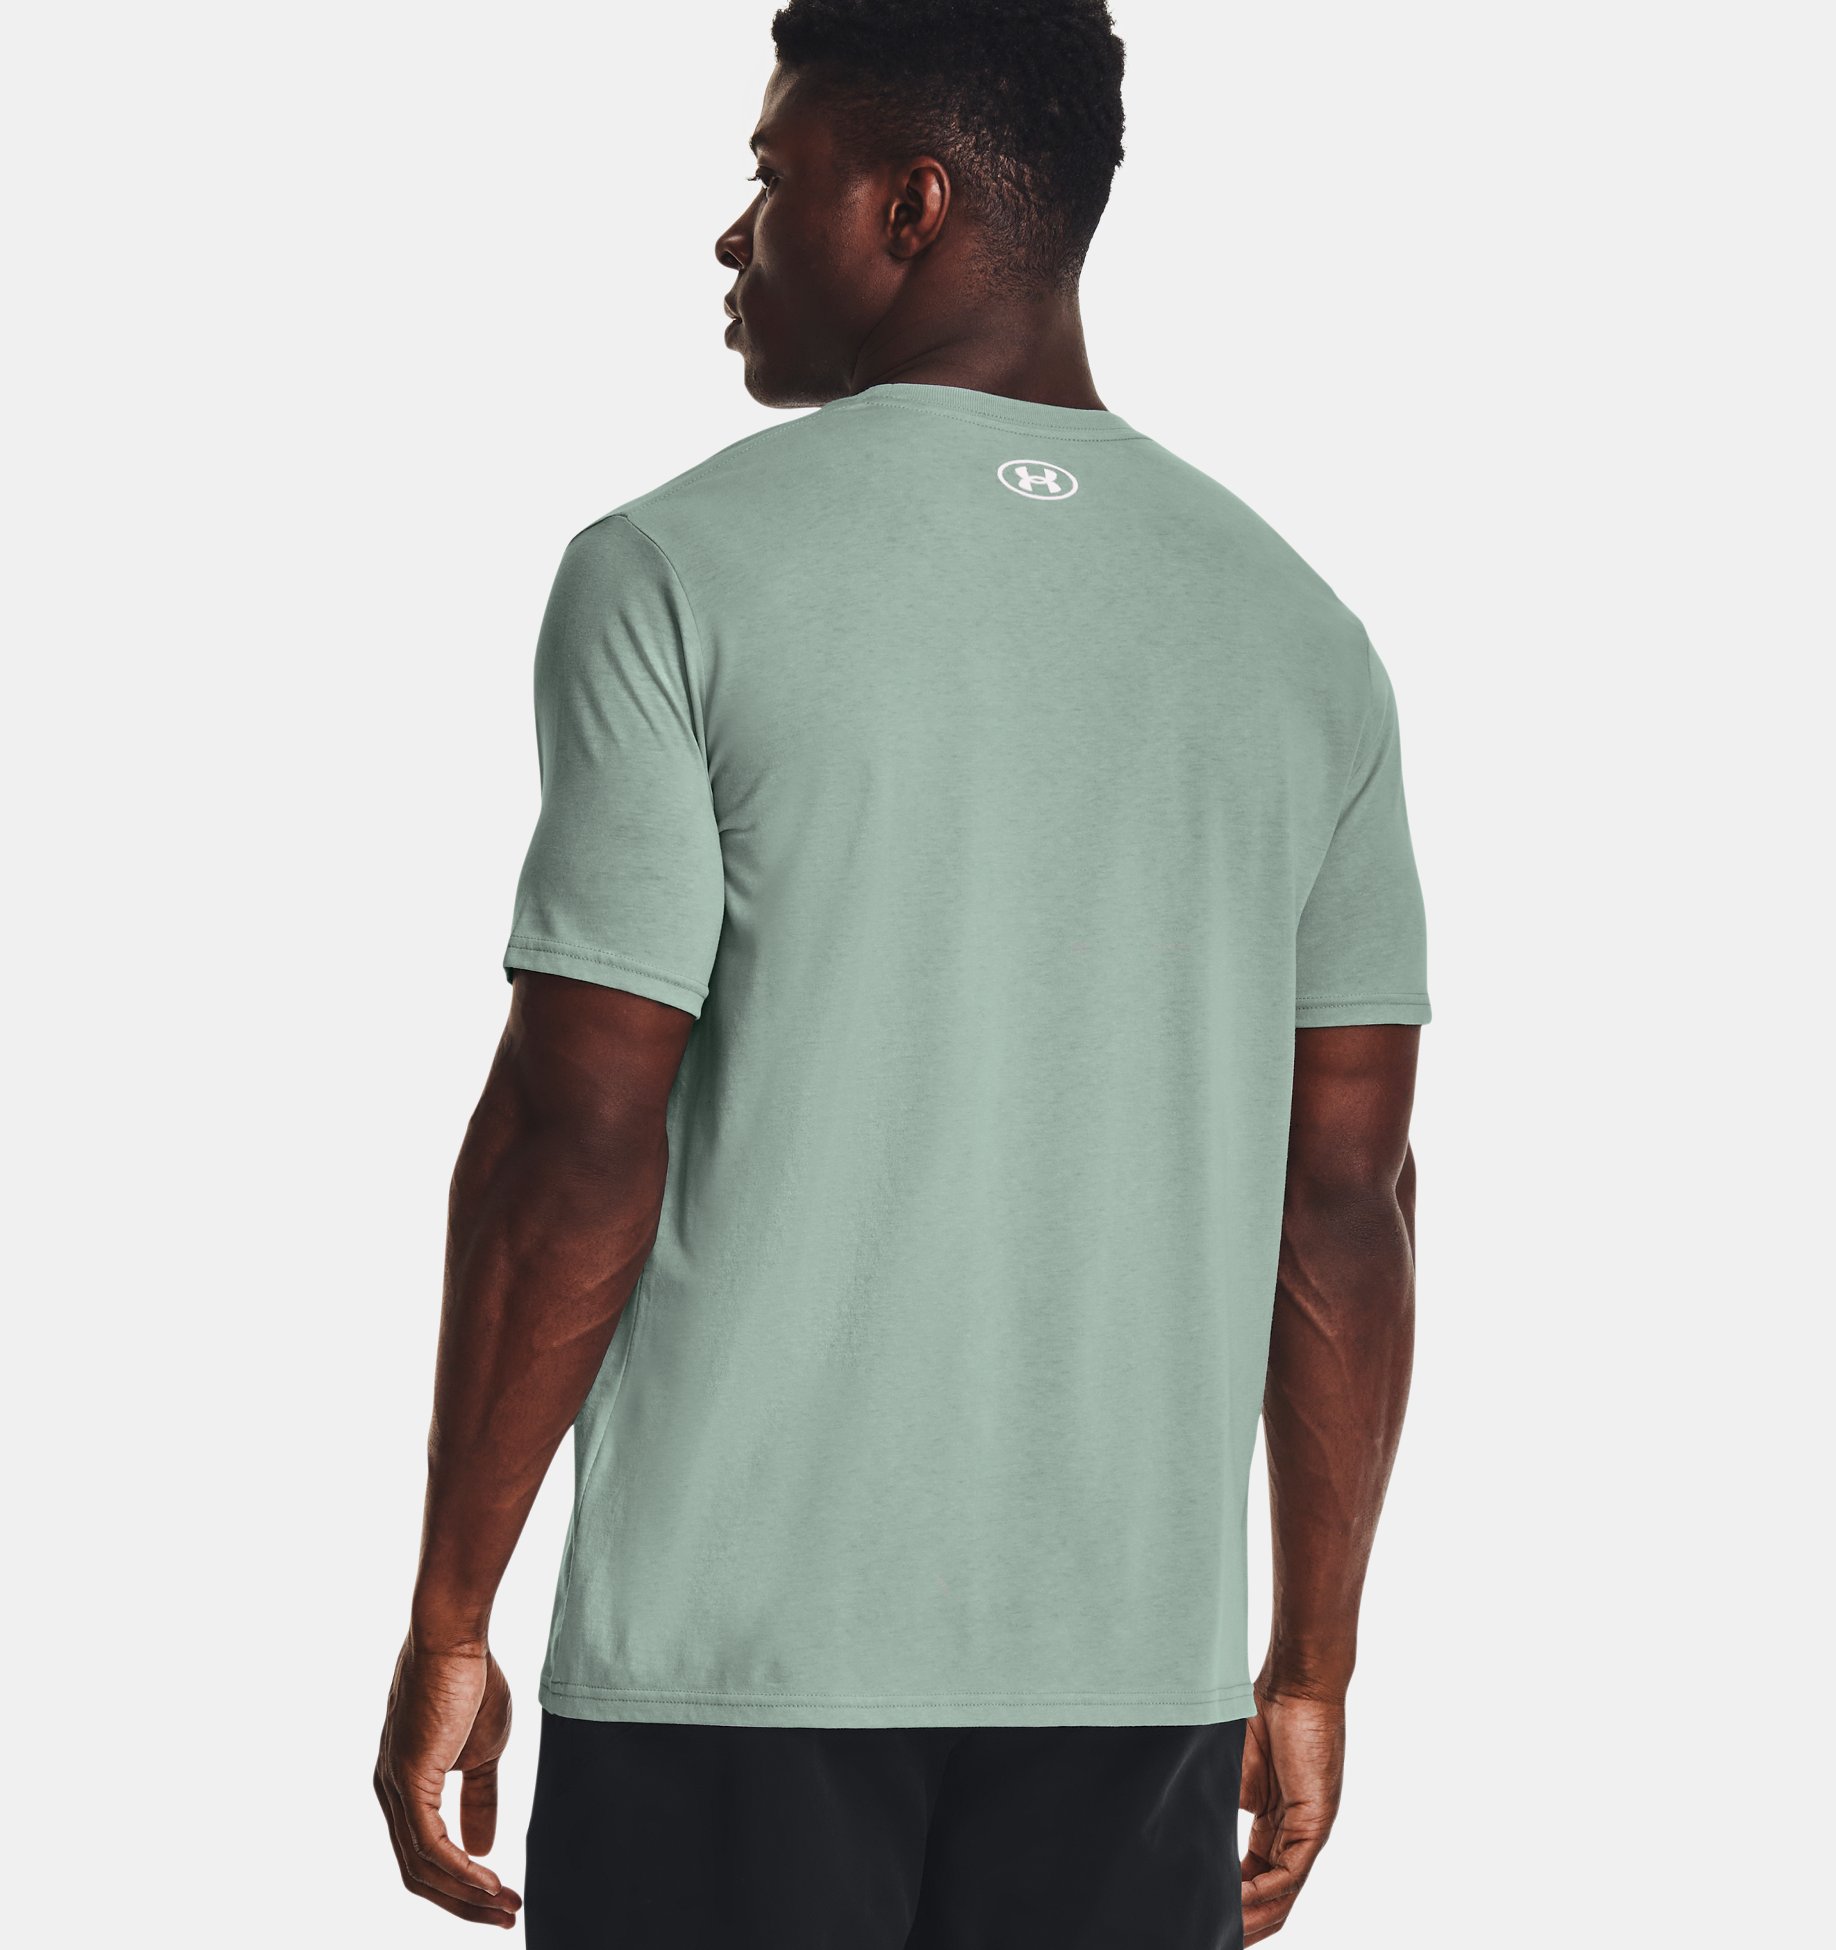 Under Armour GL Foundation Short Sleeve Shirt Herren T-Shirt green 1326849-492 